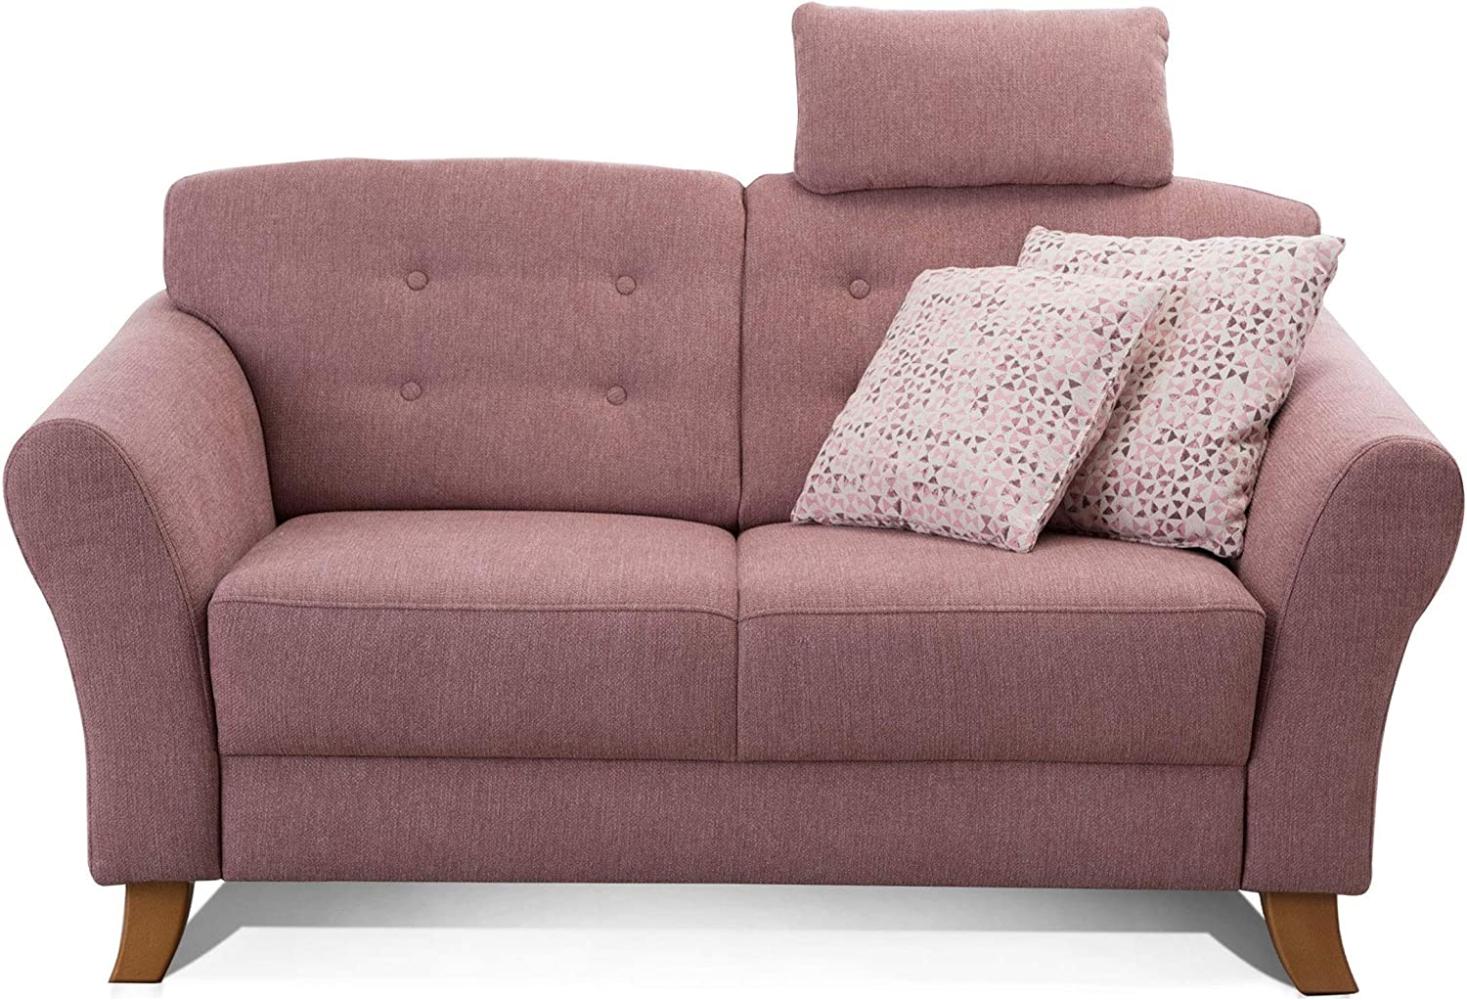 Cavadore 2-Sitzer-Sofa / Moderne Couch im Landhausstil mit Knopfeinzug im Rücken / Federkern / Inkl. Kopfstütze / 163 x 89 x 90 / Flachgewebe rosa Bild 1